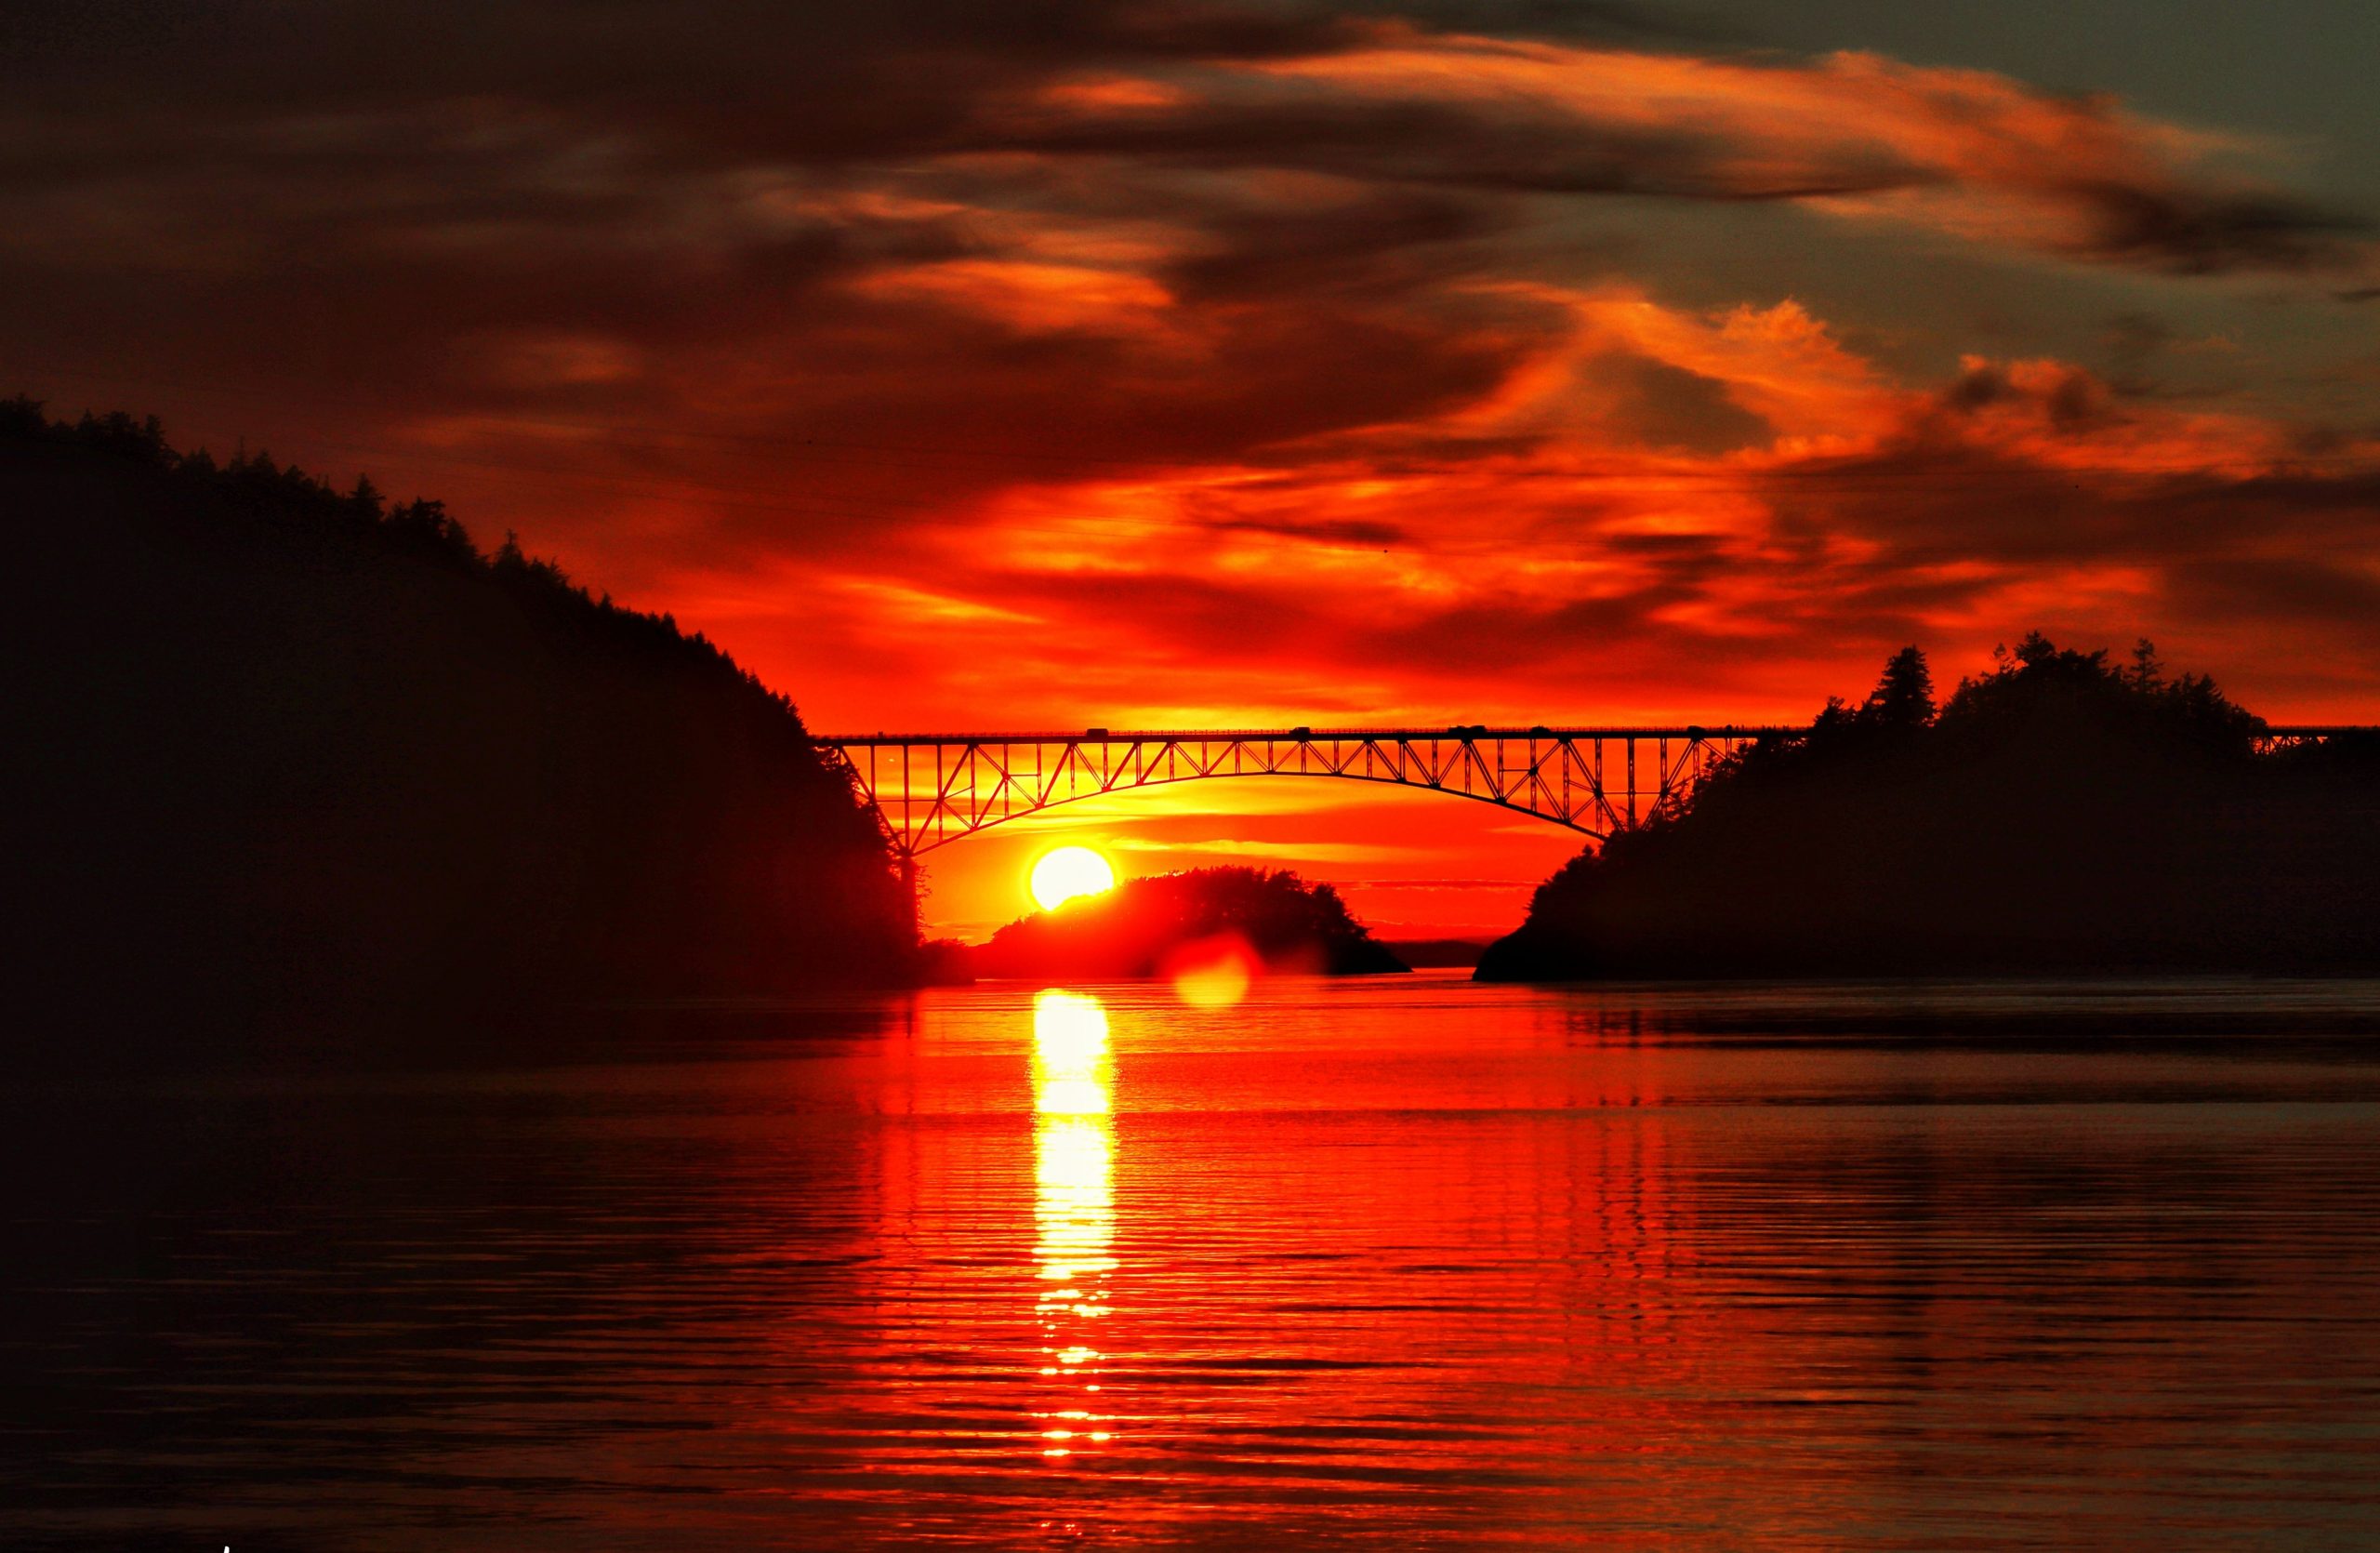 Deception Pass Bridge, Oak Harbor, Whidbey Island, Washington, Washington state Park, most visited, Iconic